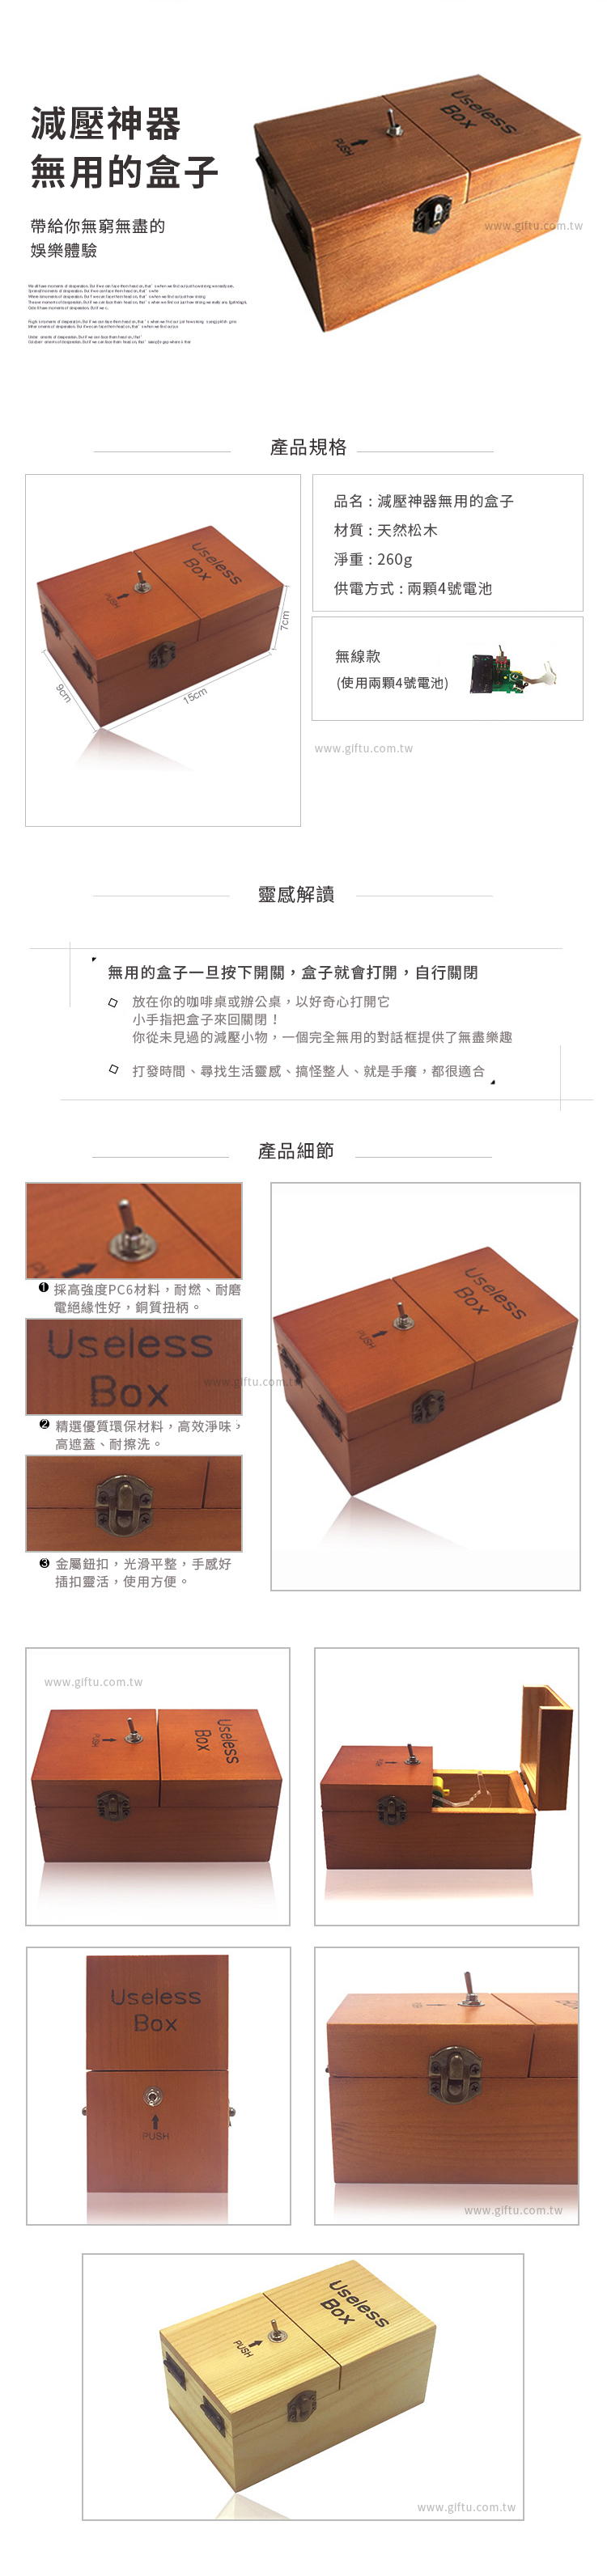 【3/29~5/31畢業季早鳥88折優惠】創意小物館 減壓神器無用的盒子 Useless Box 深棕